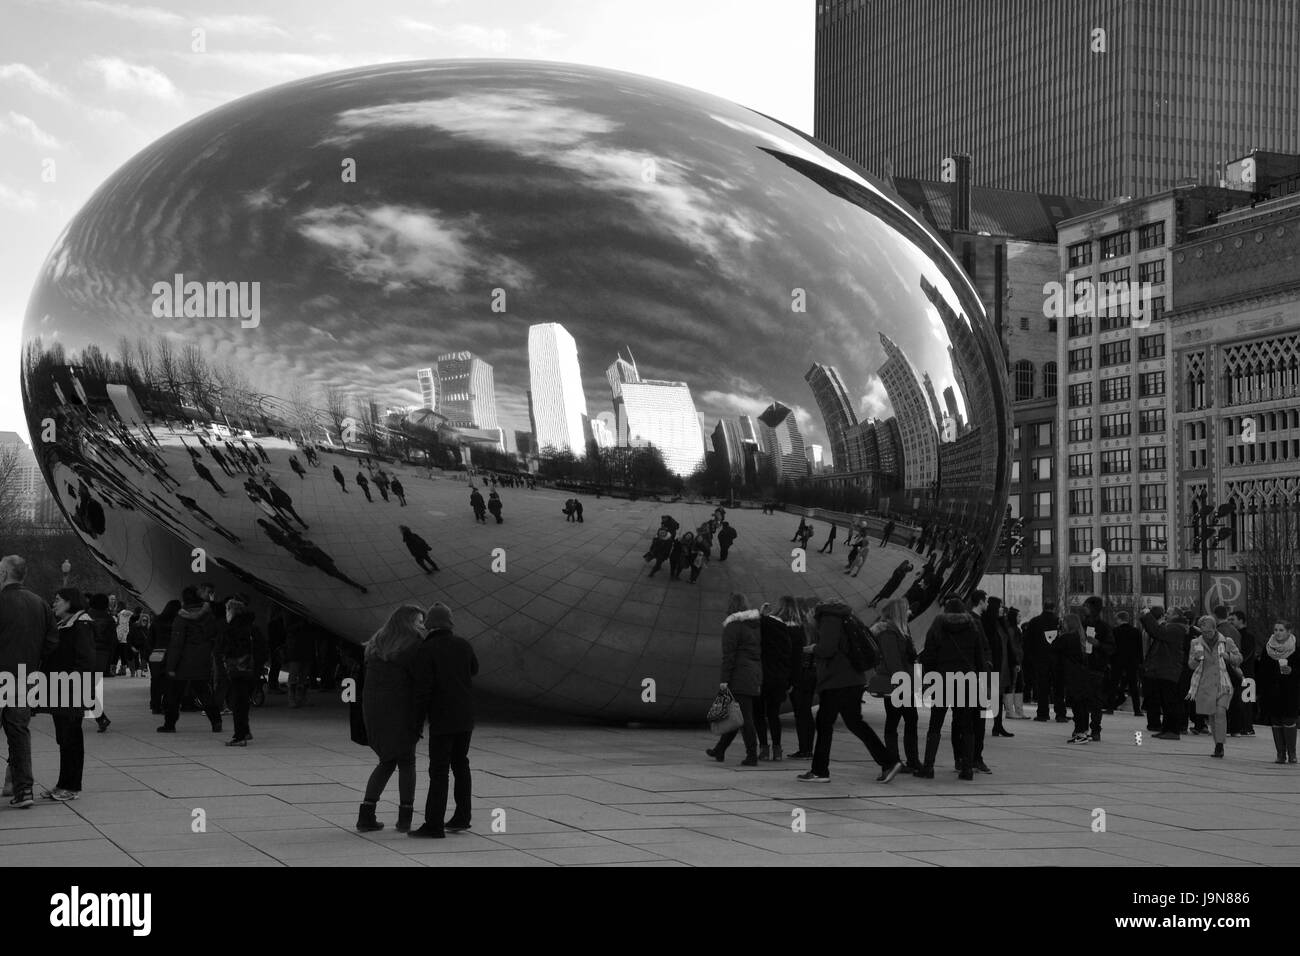 La ville se reflète dans les cloud gate, également connu sous le nom de bean, au centre-ville de millennium park chicago Illinois. Banque D'Images